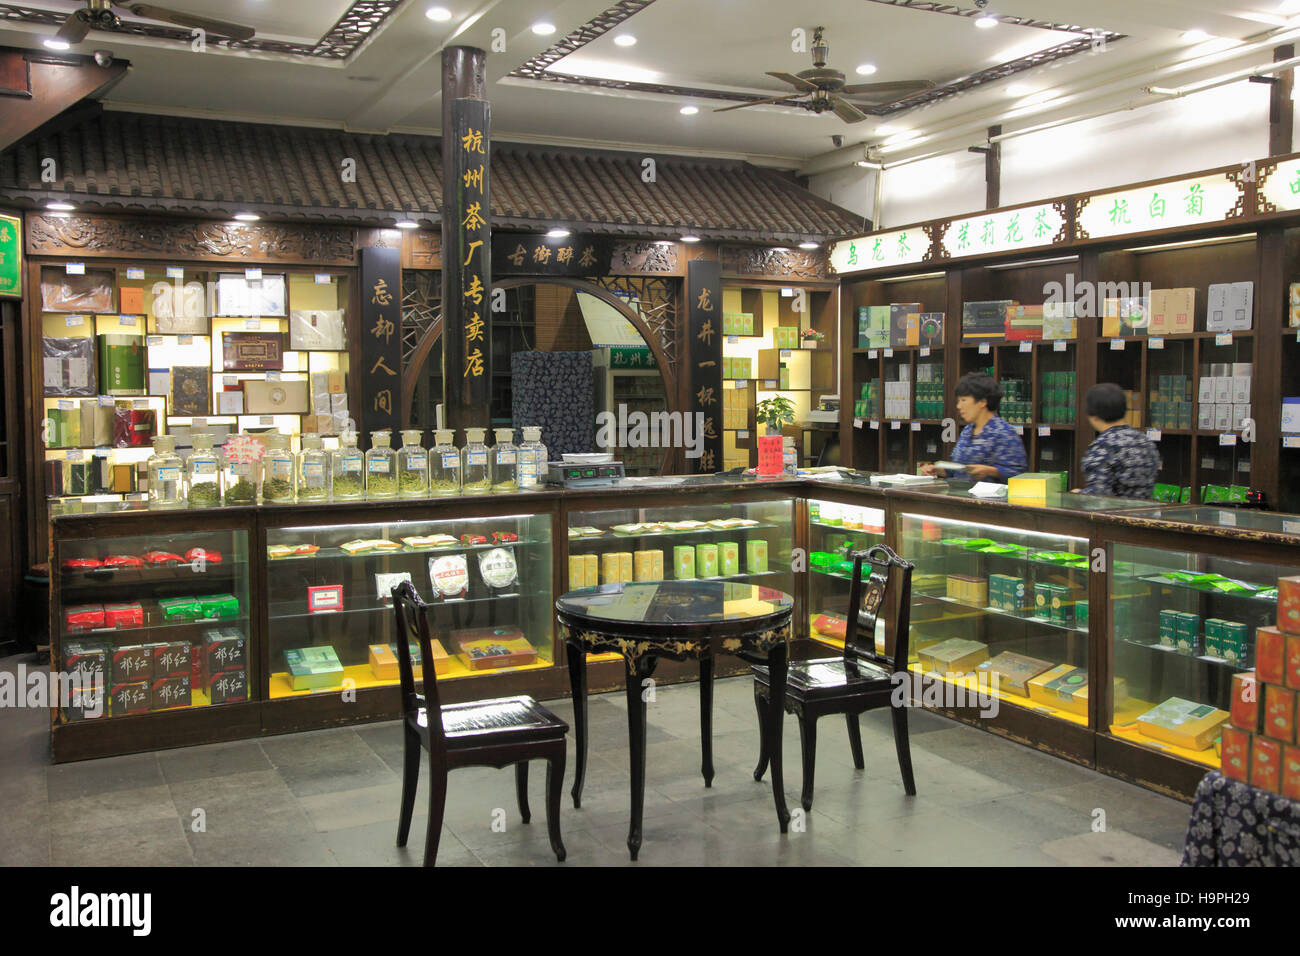 China, Zhejiang, Hangzhou, Qinghefang Old Street, chinese medicine shop, Stock Photo